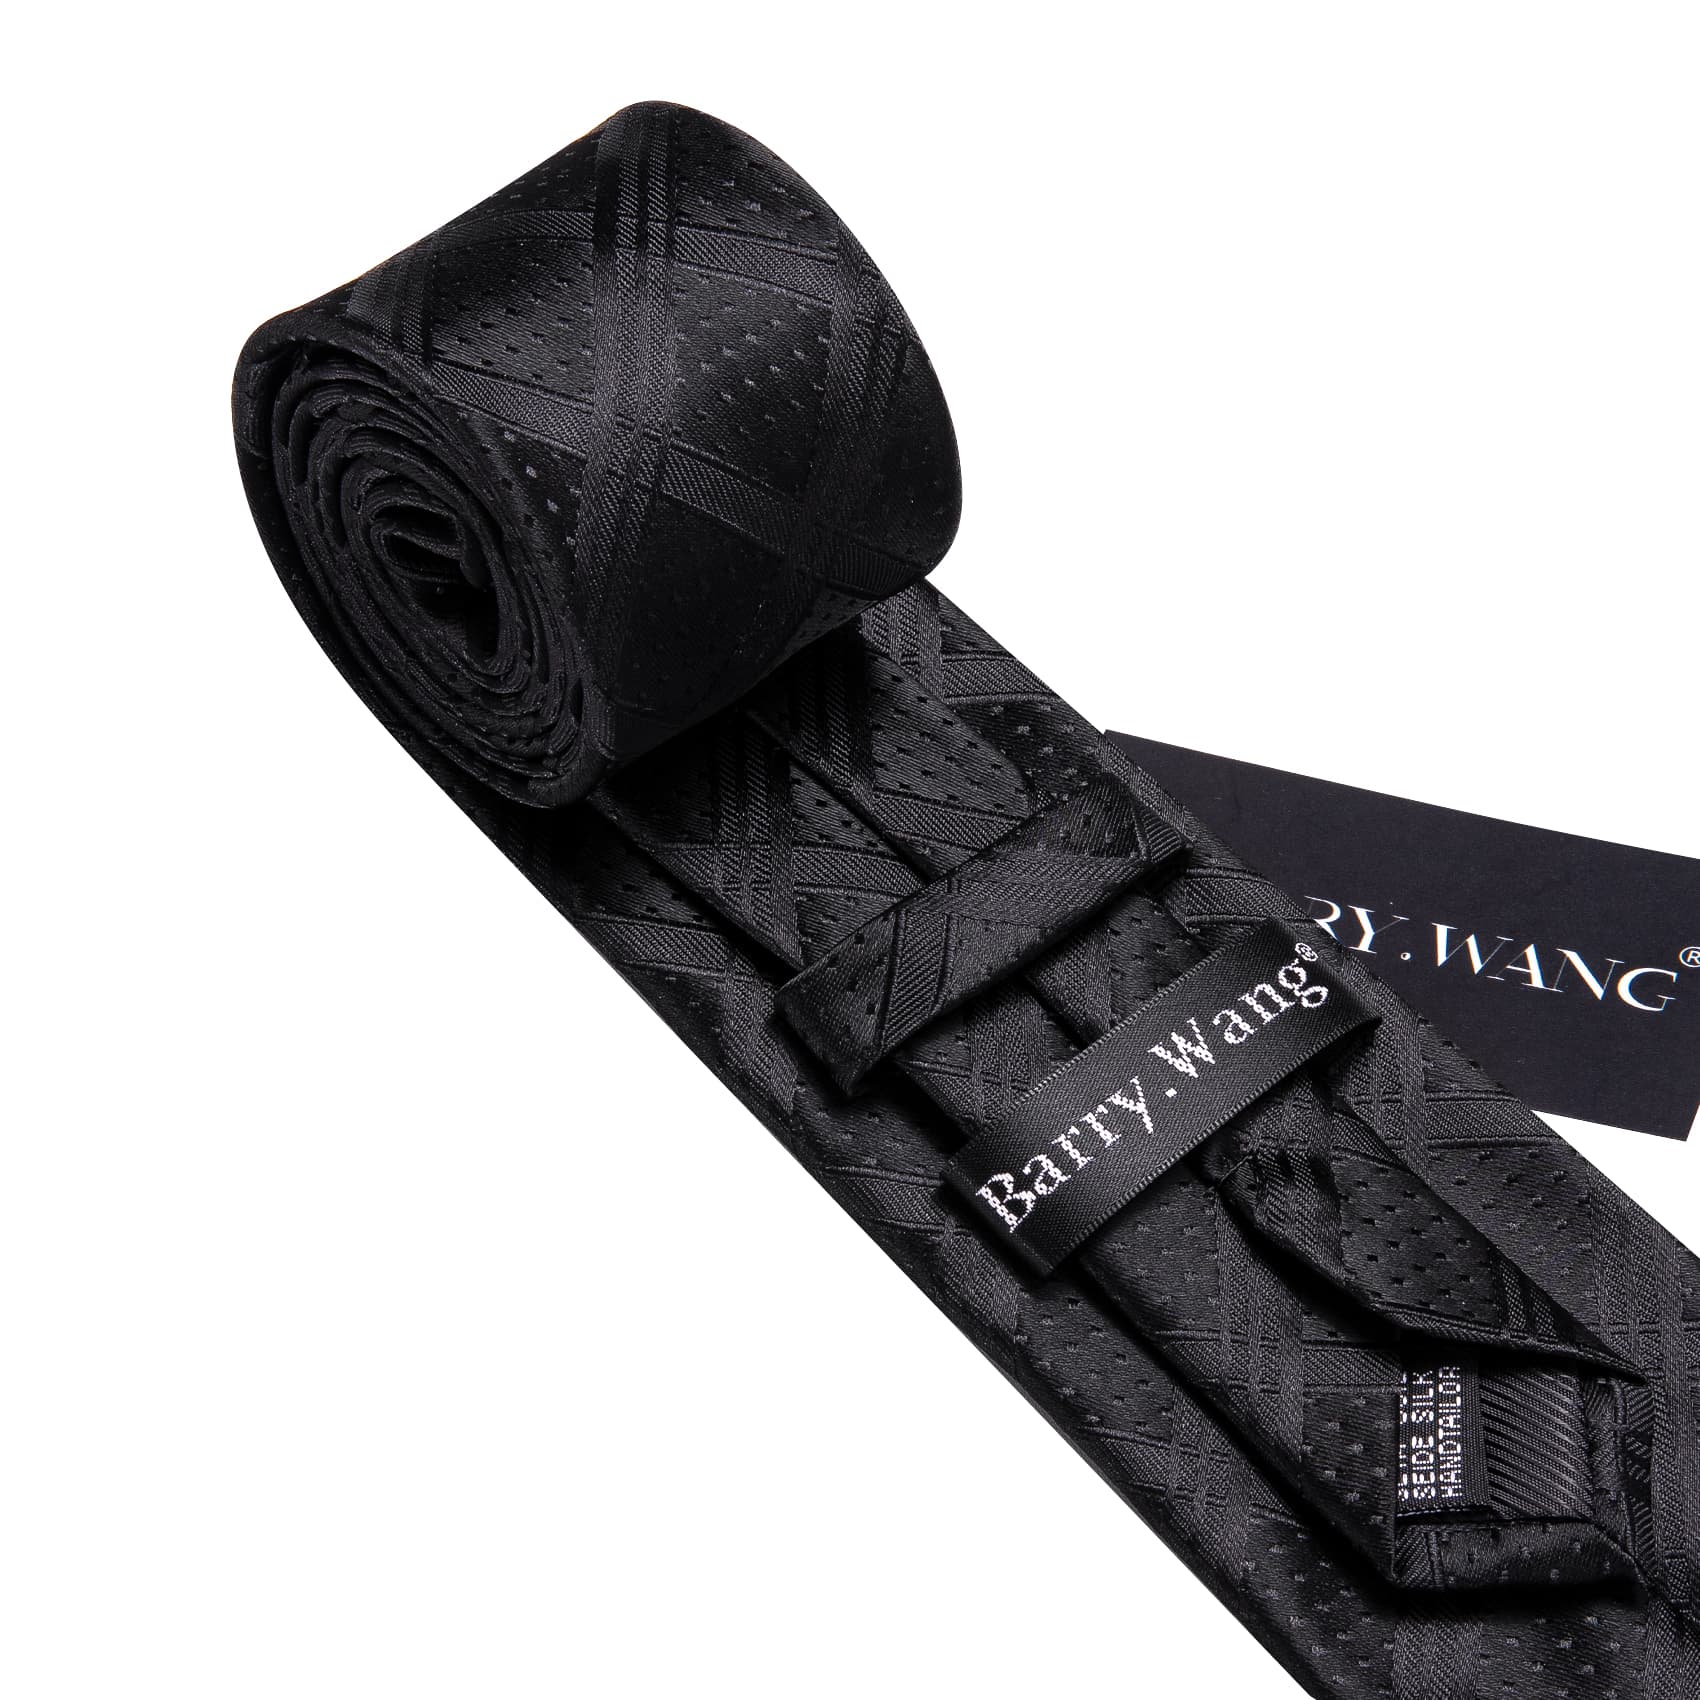 Black Plaid Tie Men's Business Set Formal